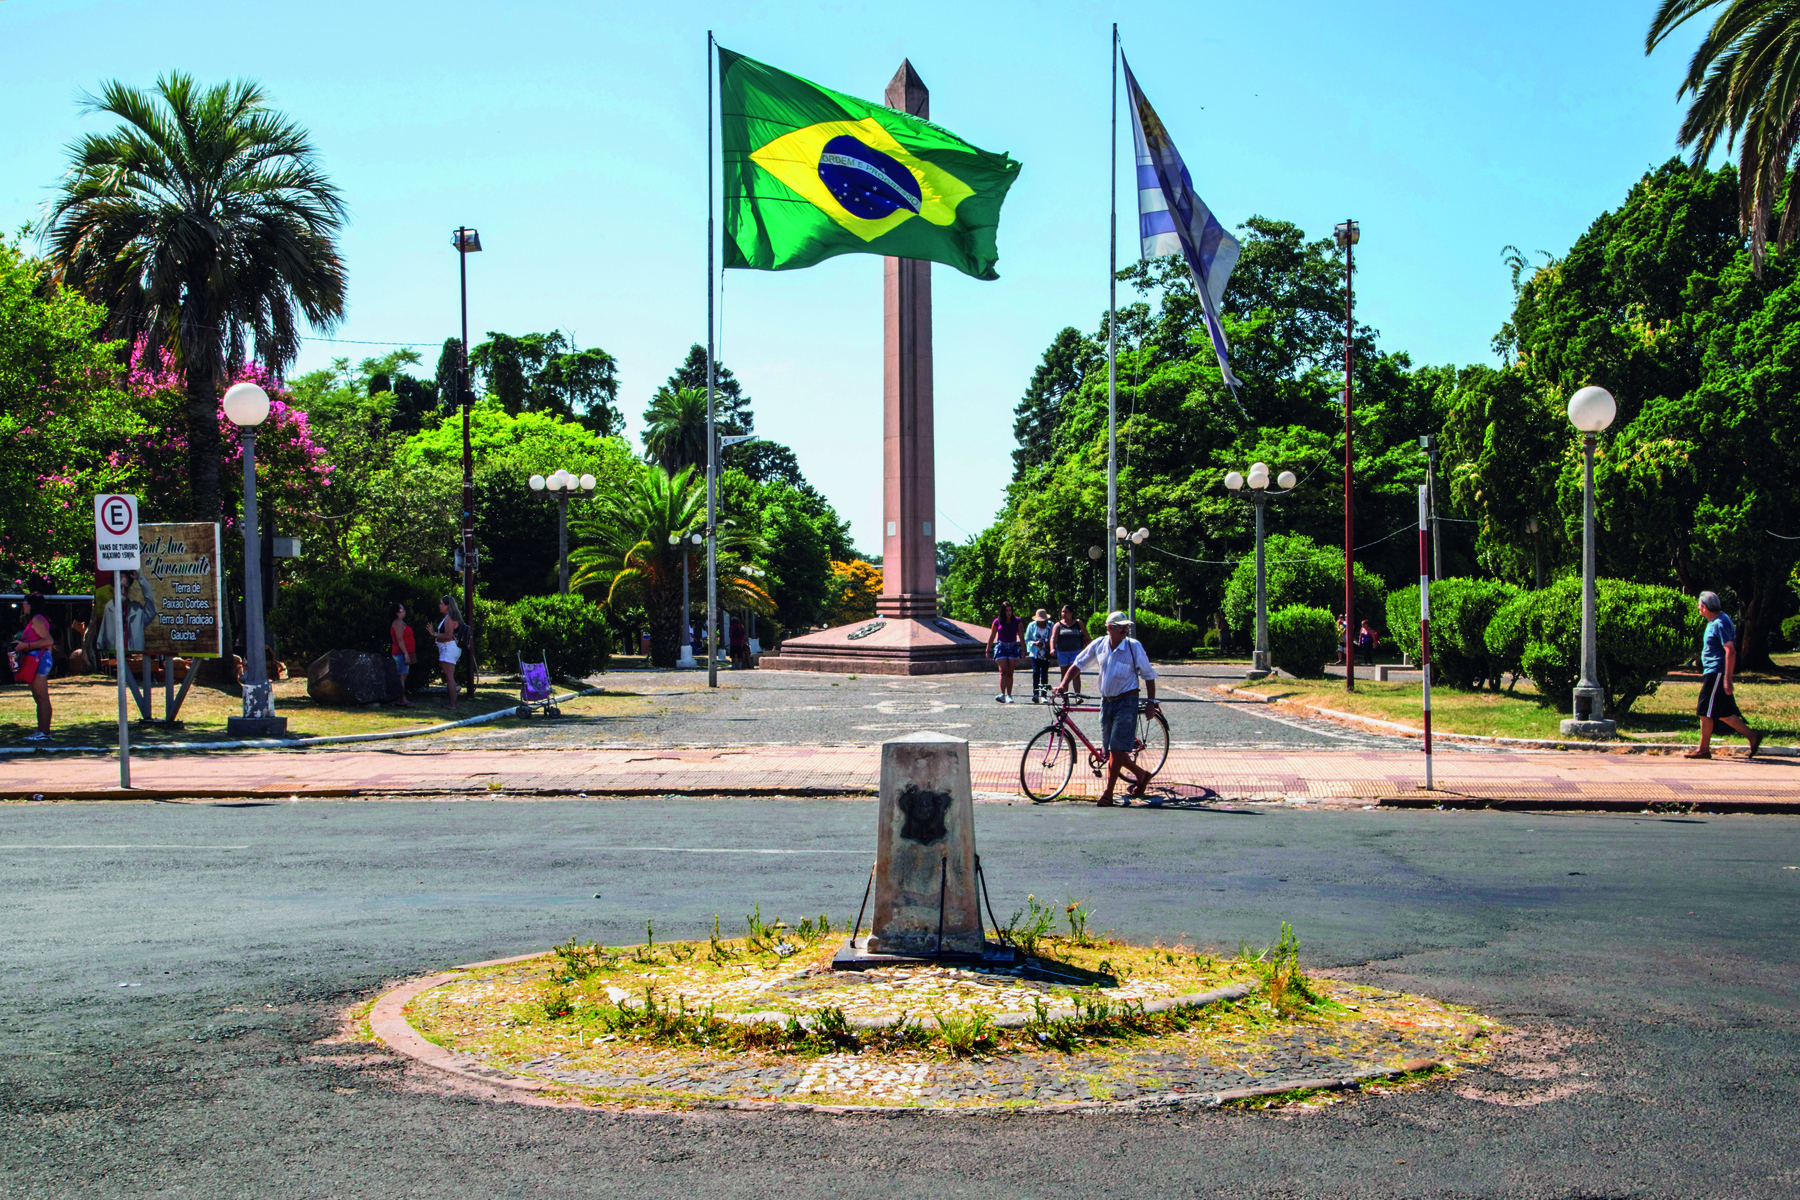 Fotografia. Vista de uma praça com várias árvores e  um grande monumento vertical de concreto no centro. Em frente há dois mastros, um ao lado do outro. No mastro à esquerda está a  bandeira do Brasil; no mastro à direita, a bandeira do Uruguai. Em frente, uma rua asfaltada com uma pessoa de bicicleta.